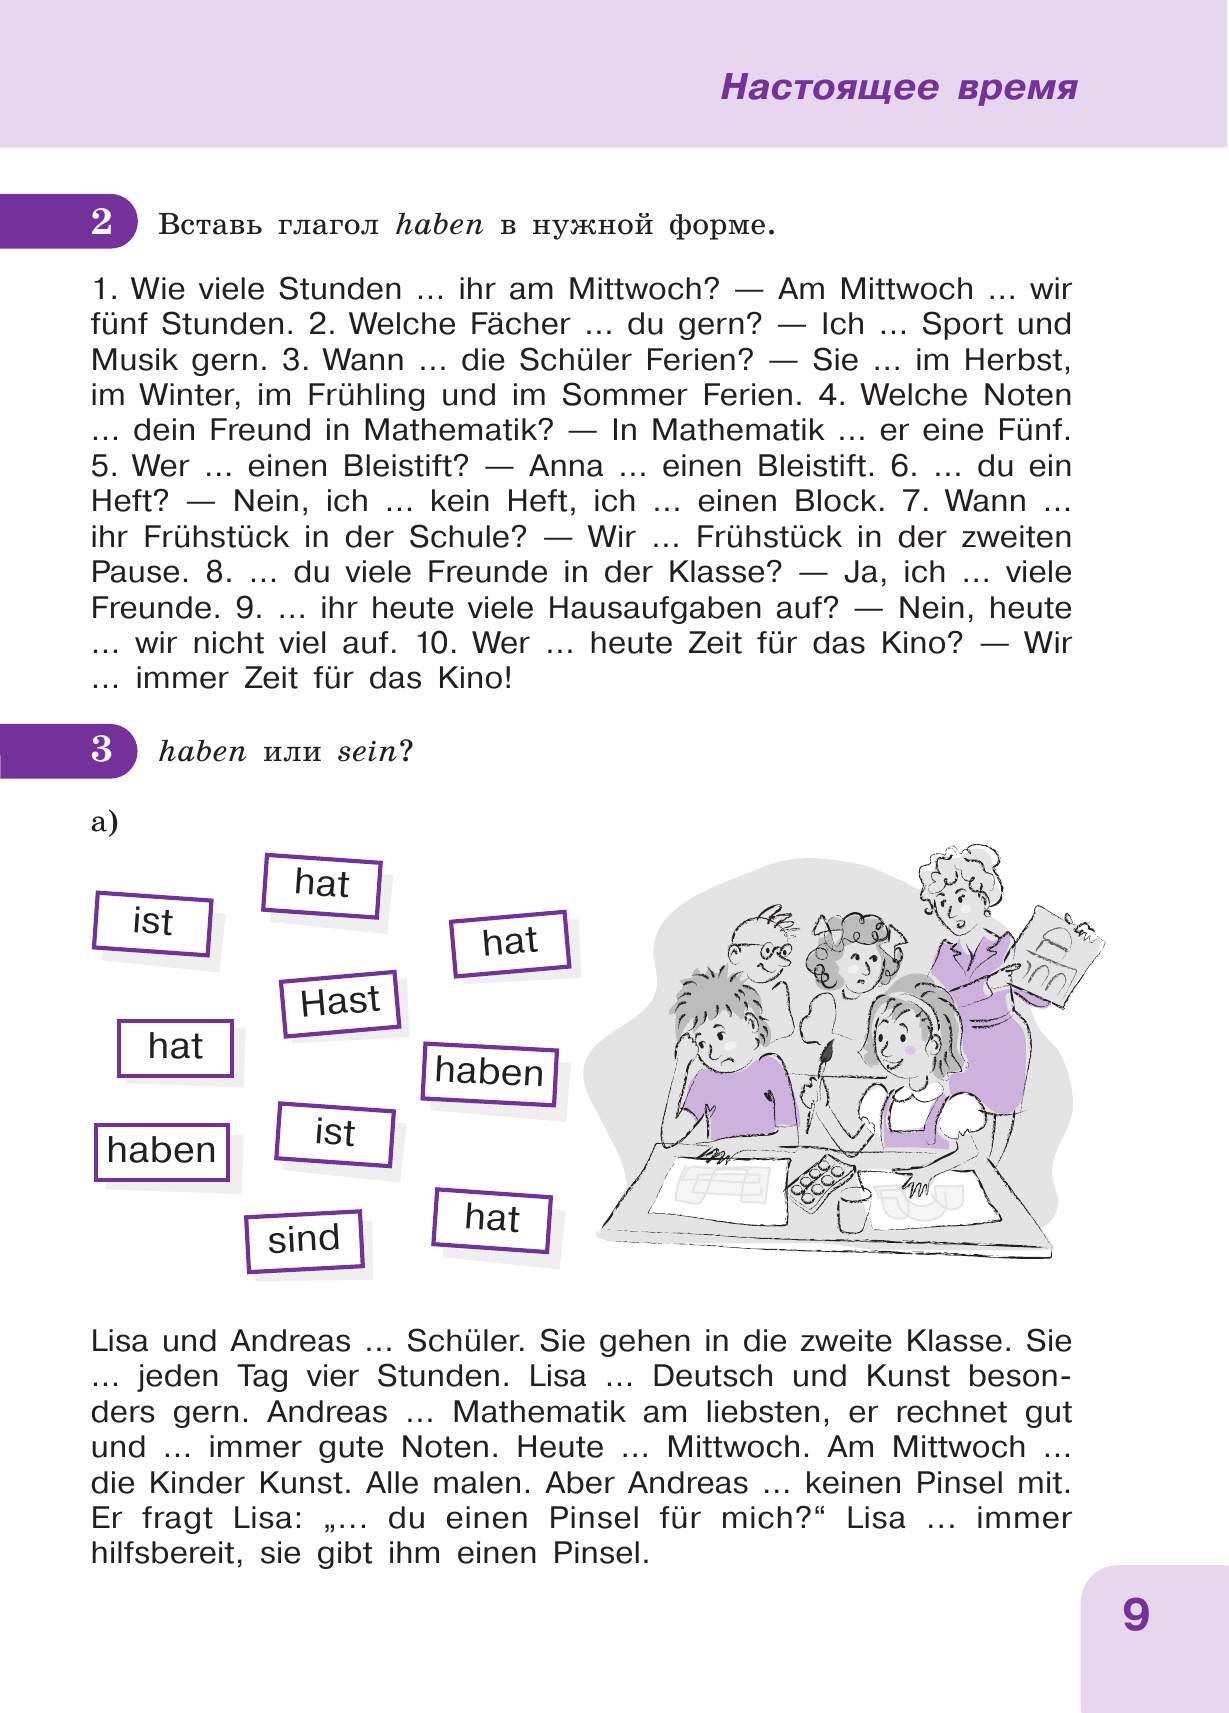 Немецкий язык: время грамматики. Пособие для эффективного изучения и тренировки грамматики - фото №17